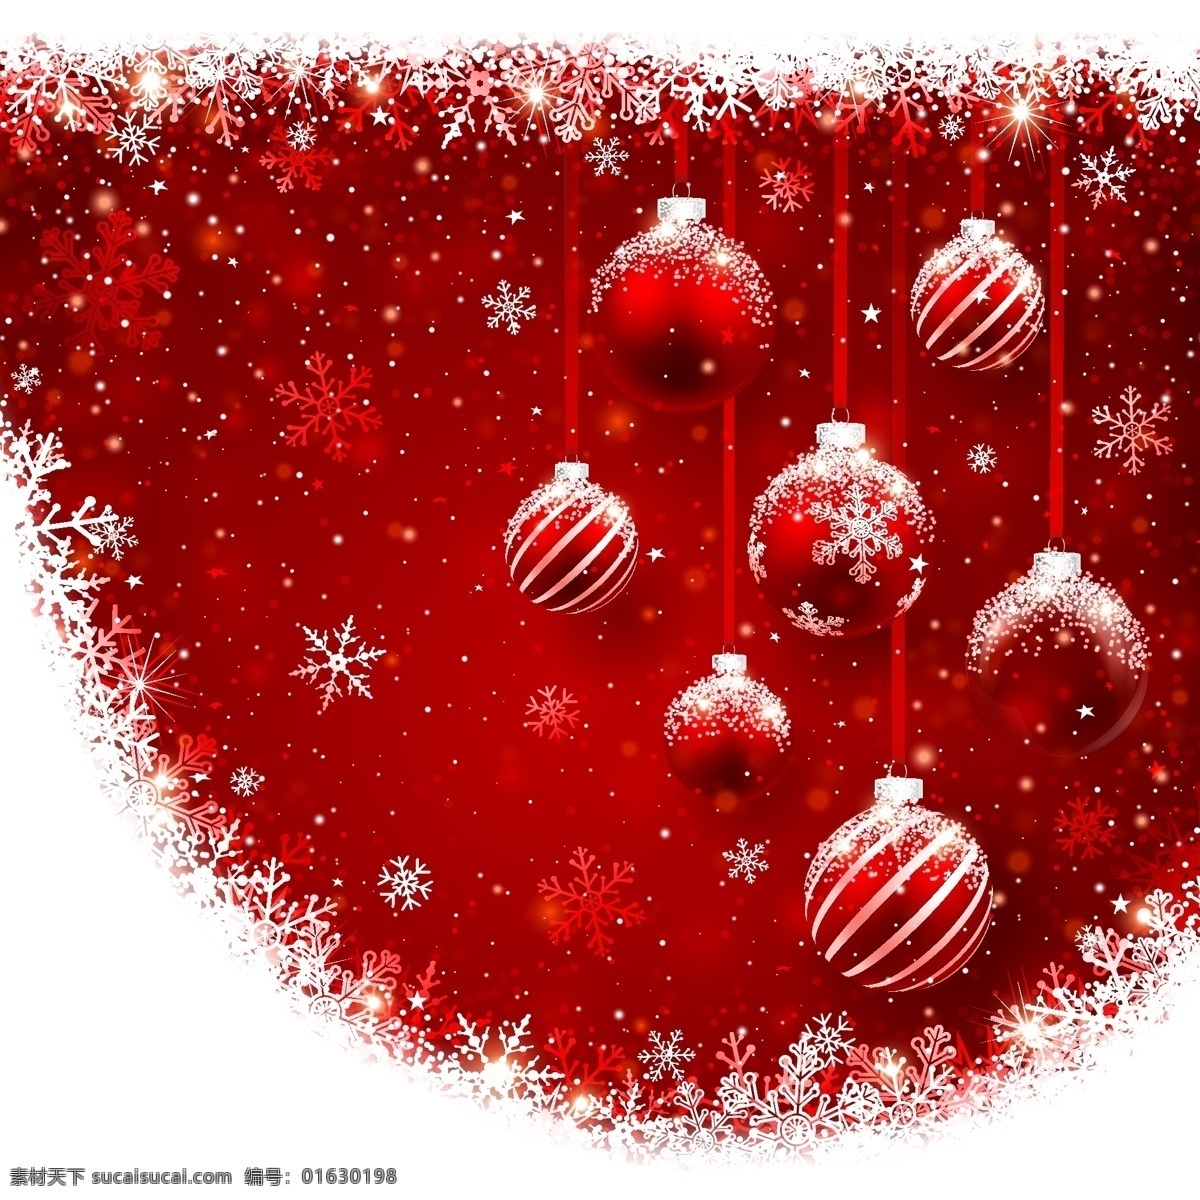 卡通 圣诞节 彩球 背景 底纹 冬天 红色 节日 雪花